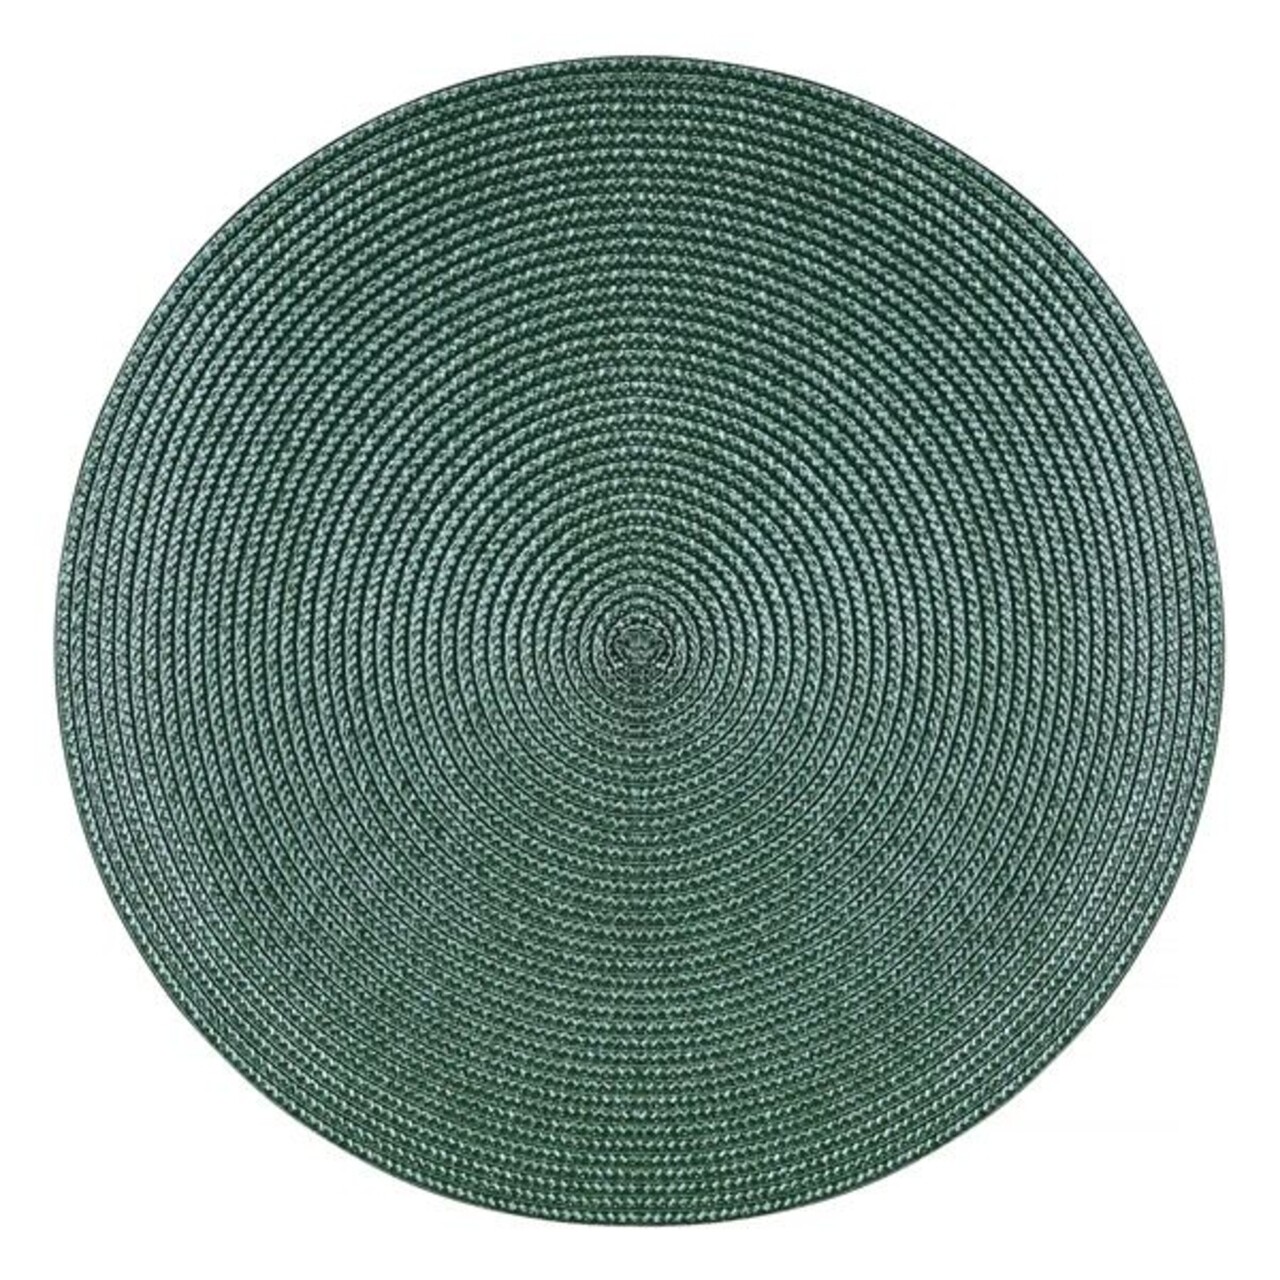 Hawaii tányértartó, Ambition, 38 cm, műanyag, sötétzöld